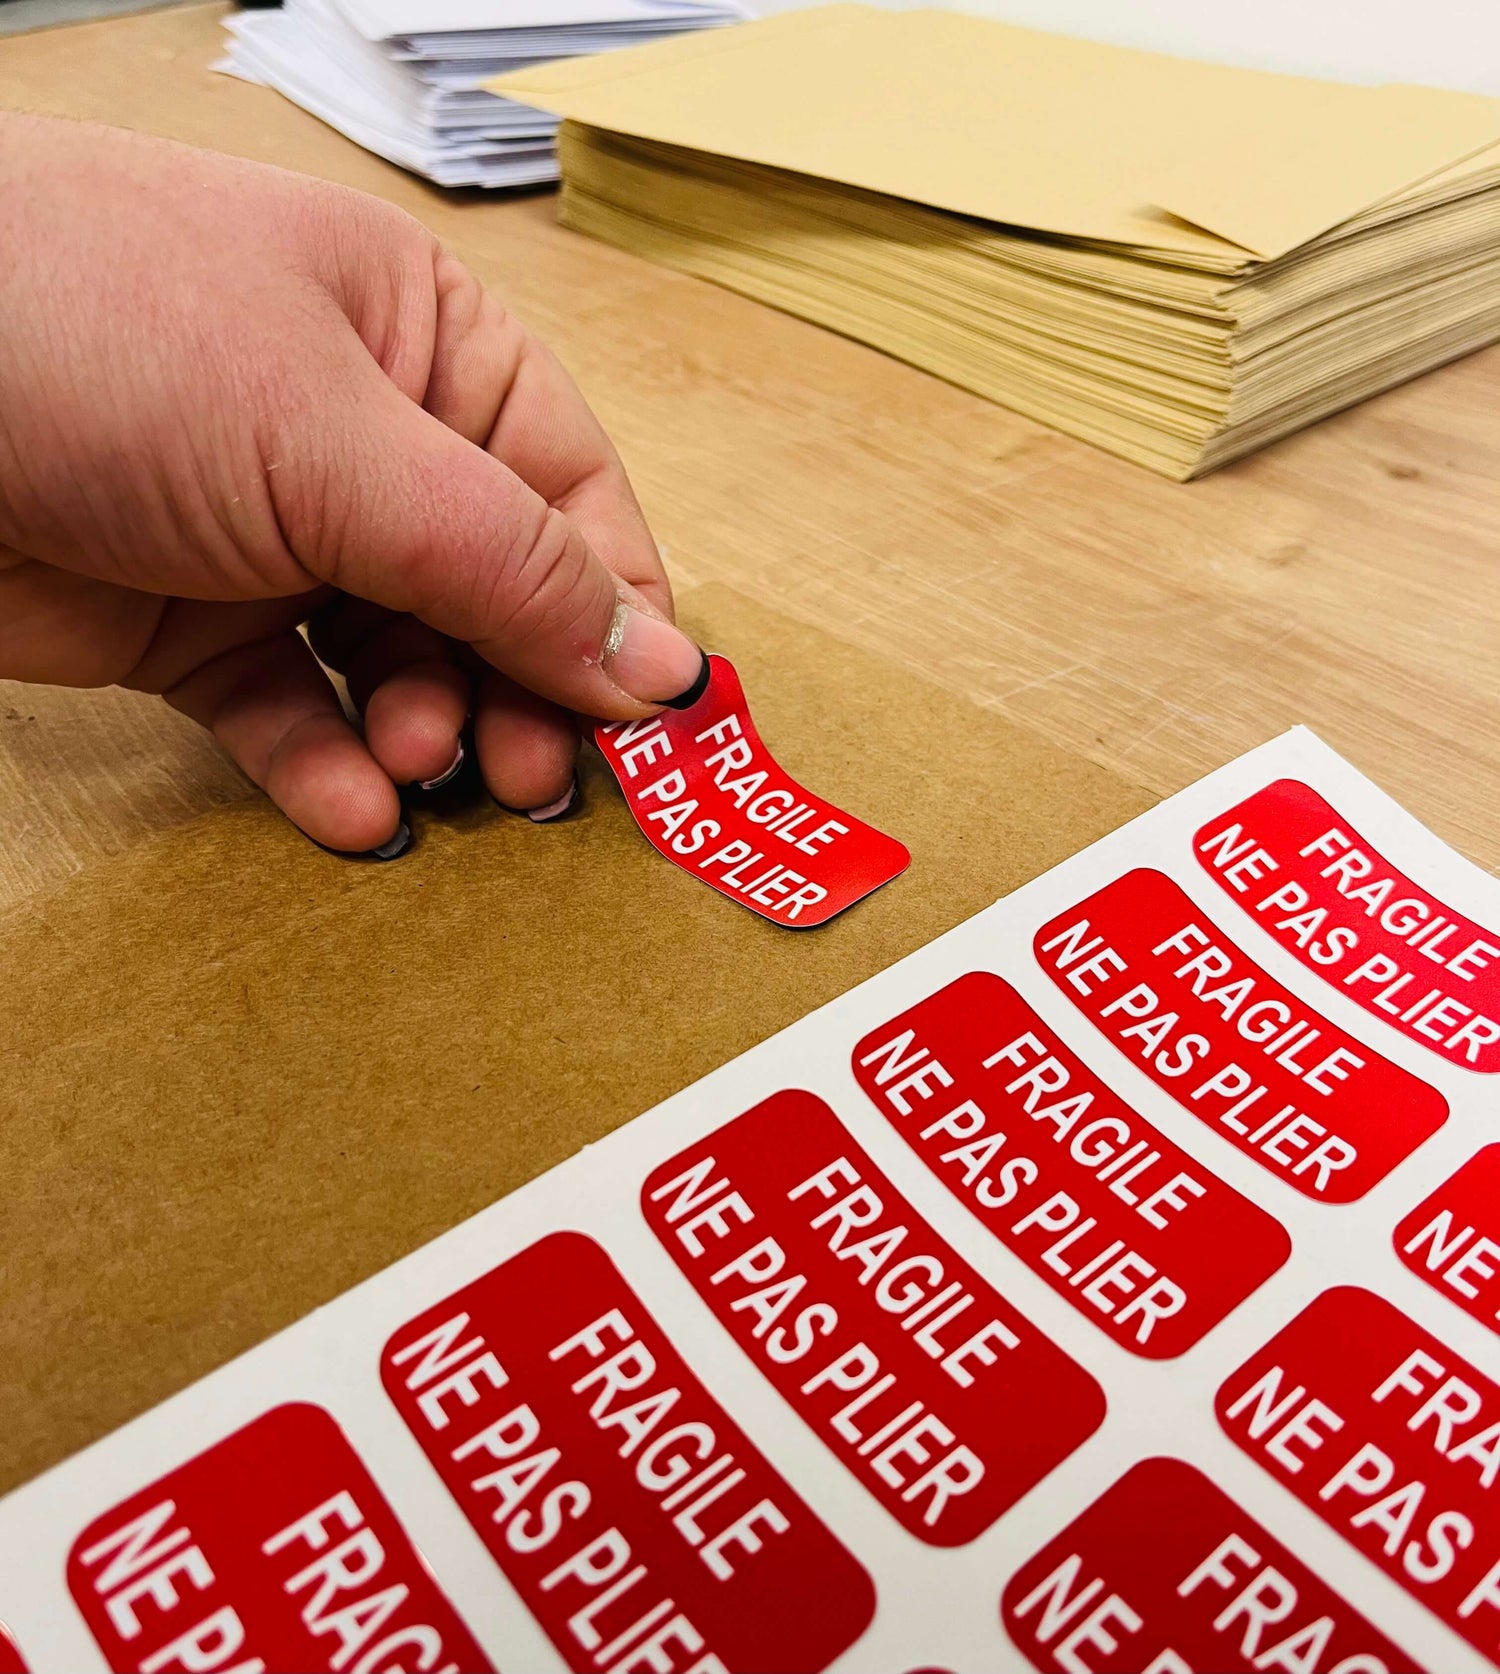 Sticker autocollant pour boite aux lettres personnalisé - Éco-responsable  et français – StickerGreen